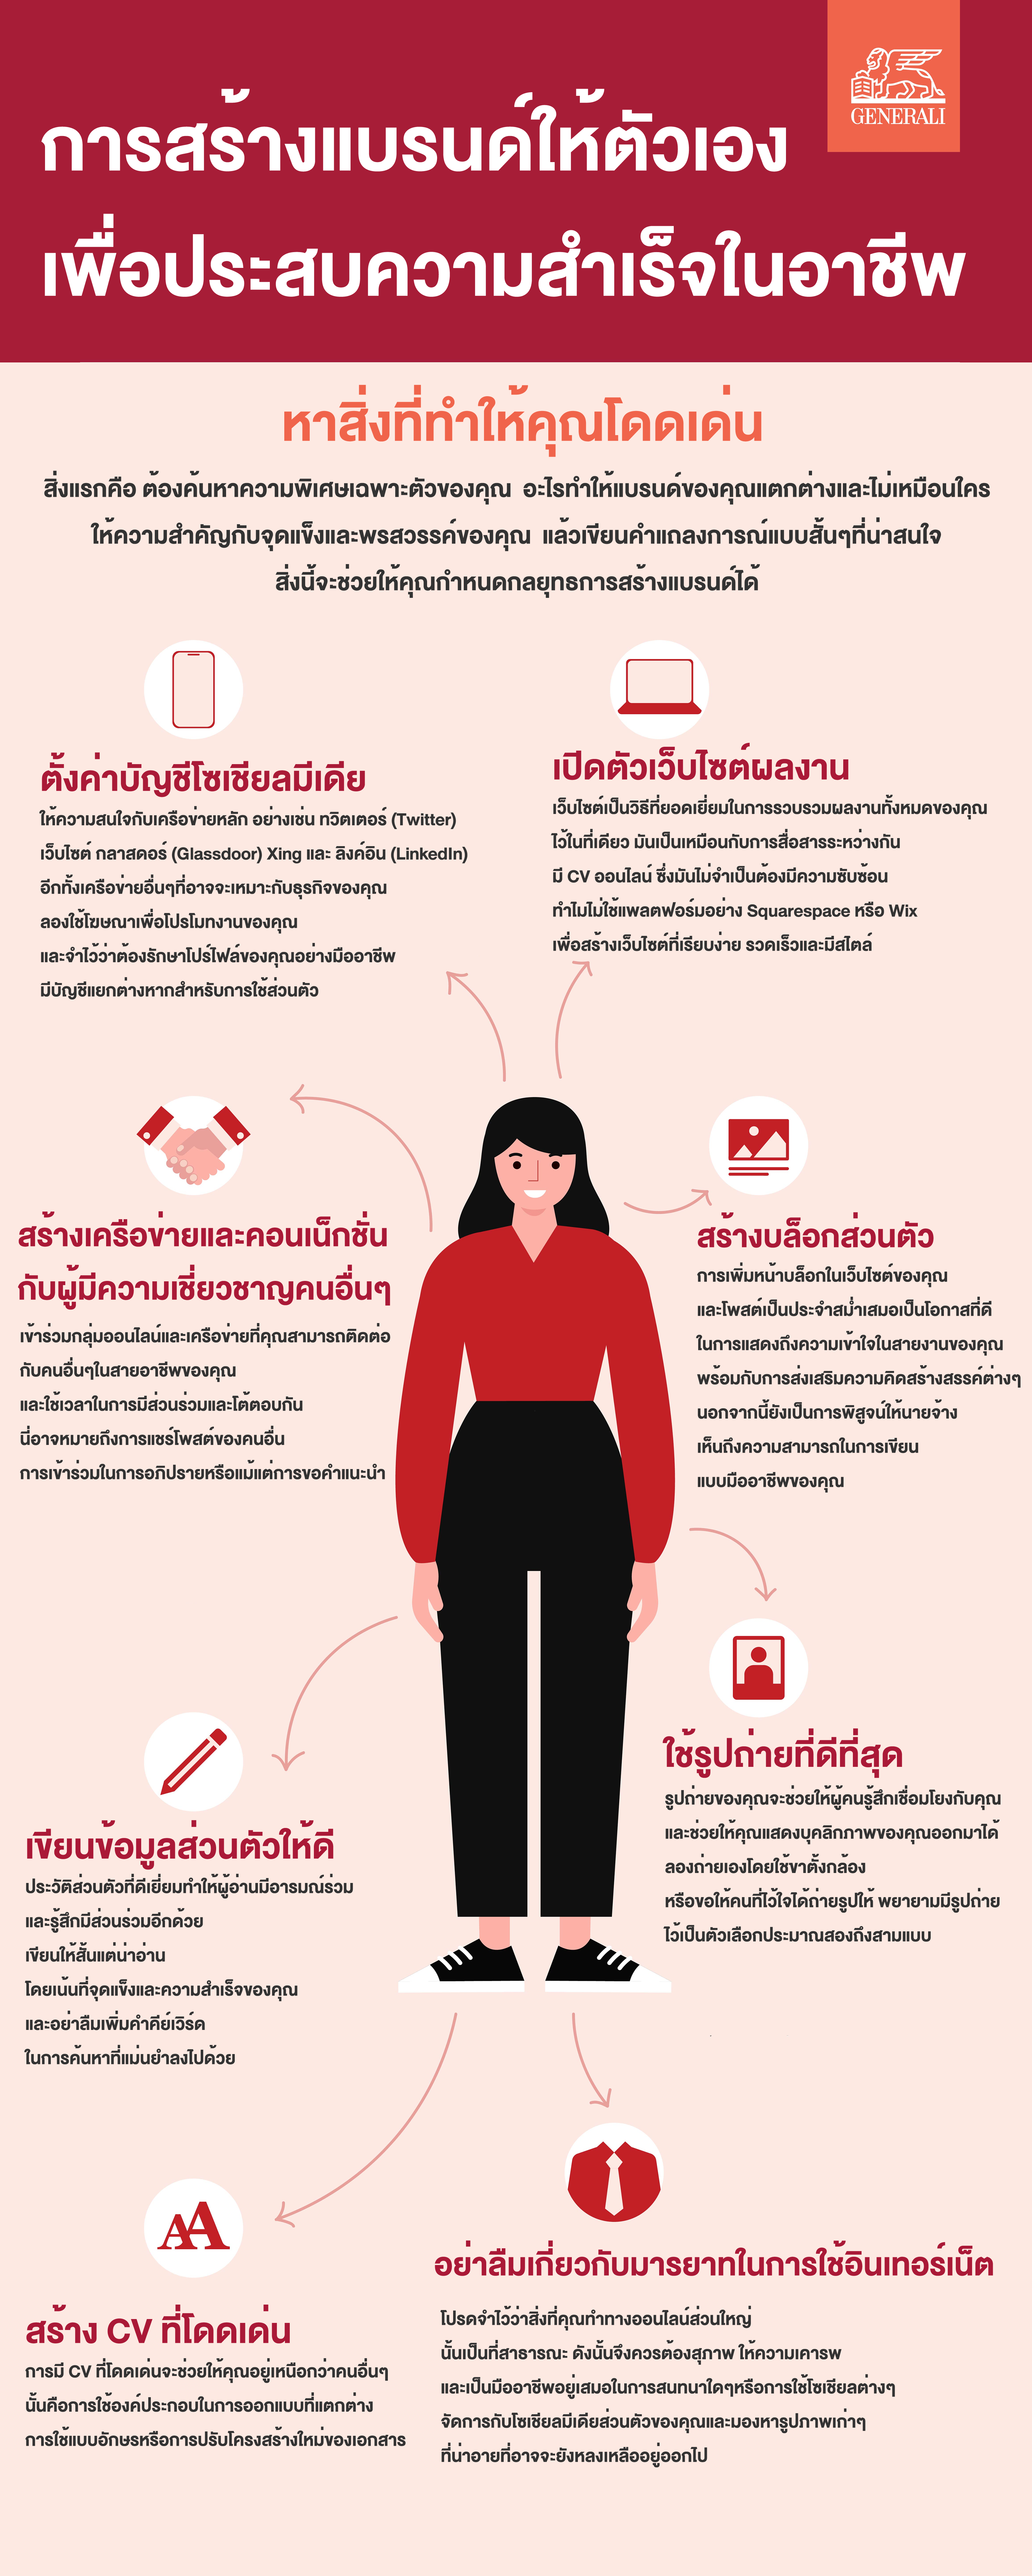 การสร้างแบรนด์ให้ตัวเอง เพื่อประสบความสำเร็จในอาชีพ (2Min Read) | Global  Standard Insurance Company In Thailand | Generali